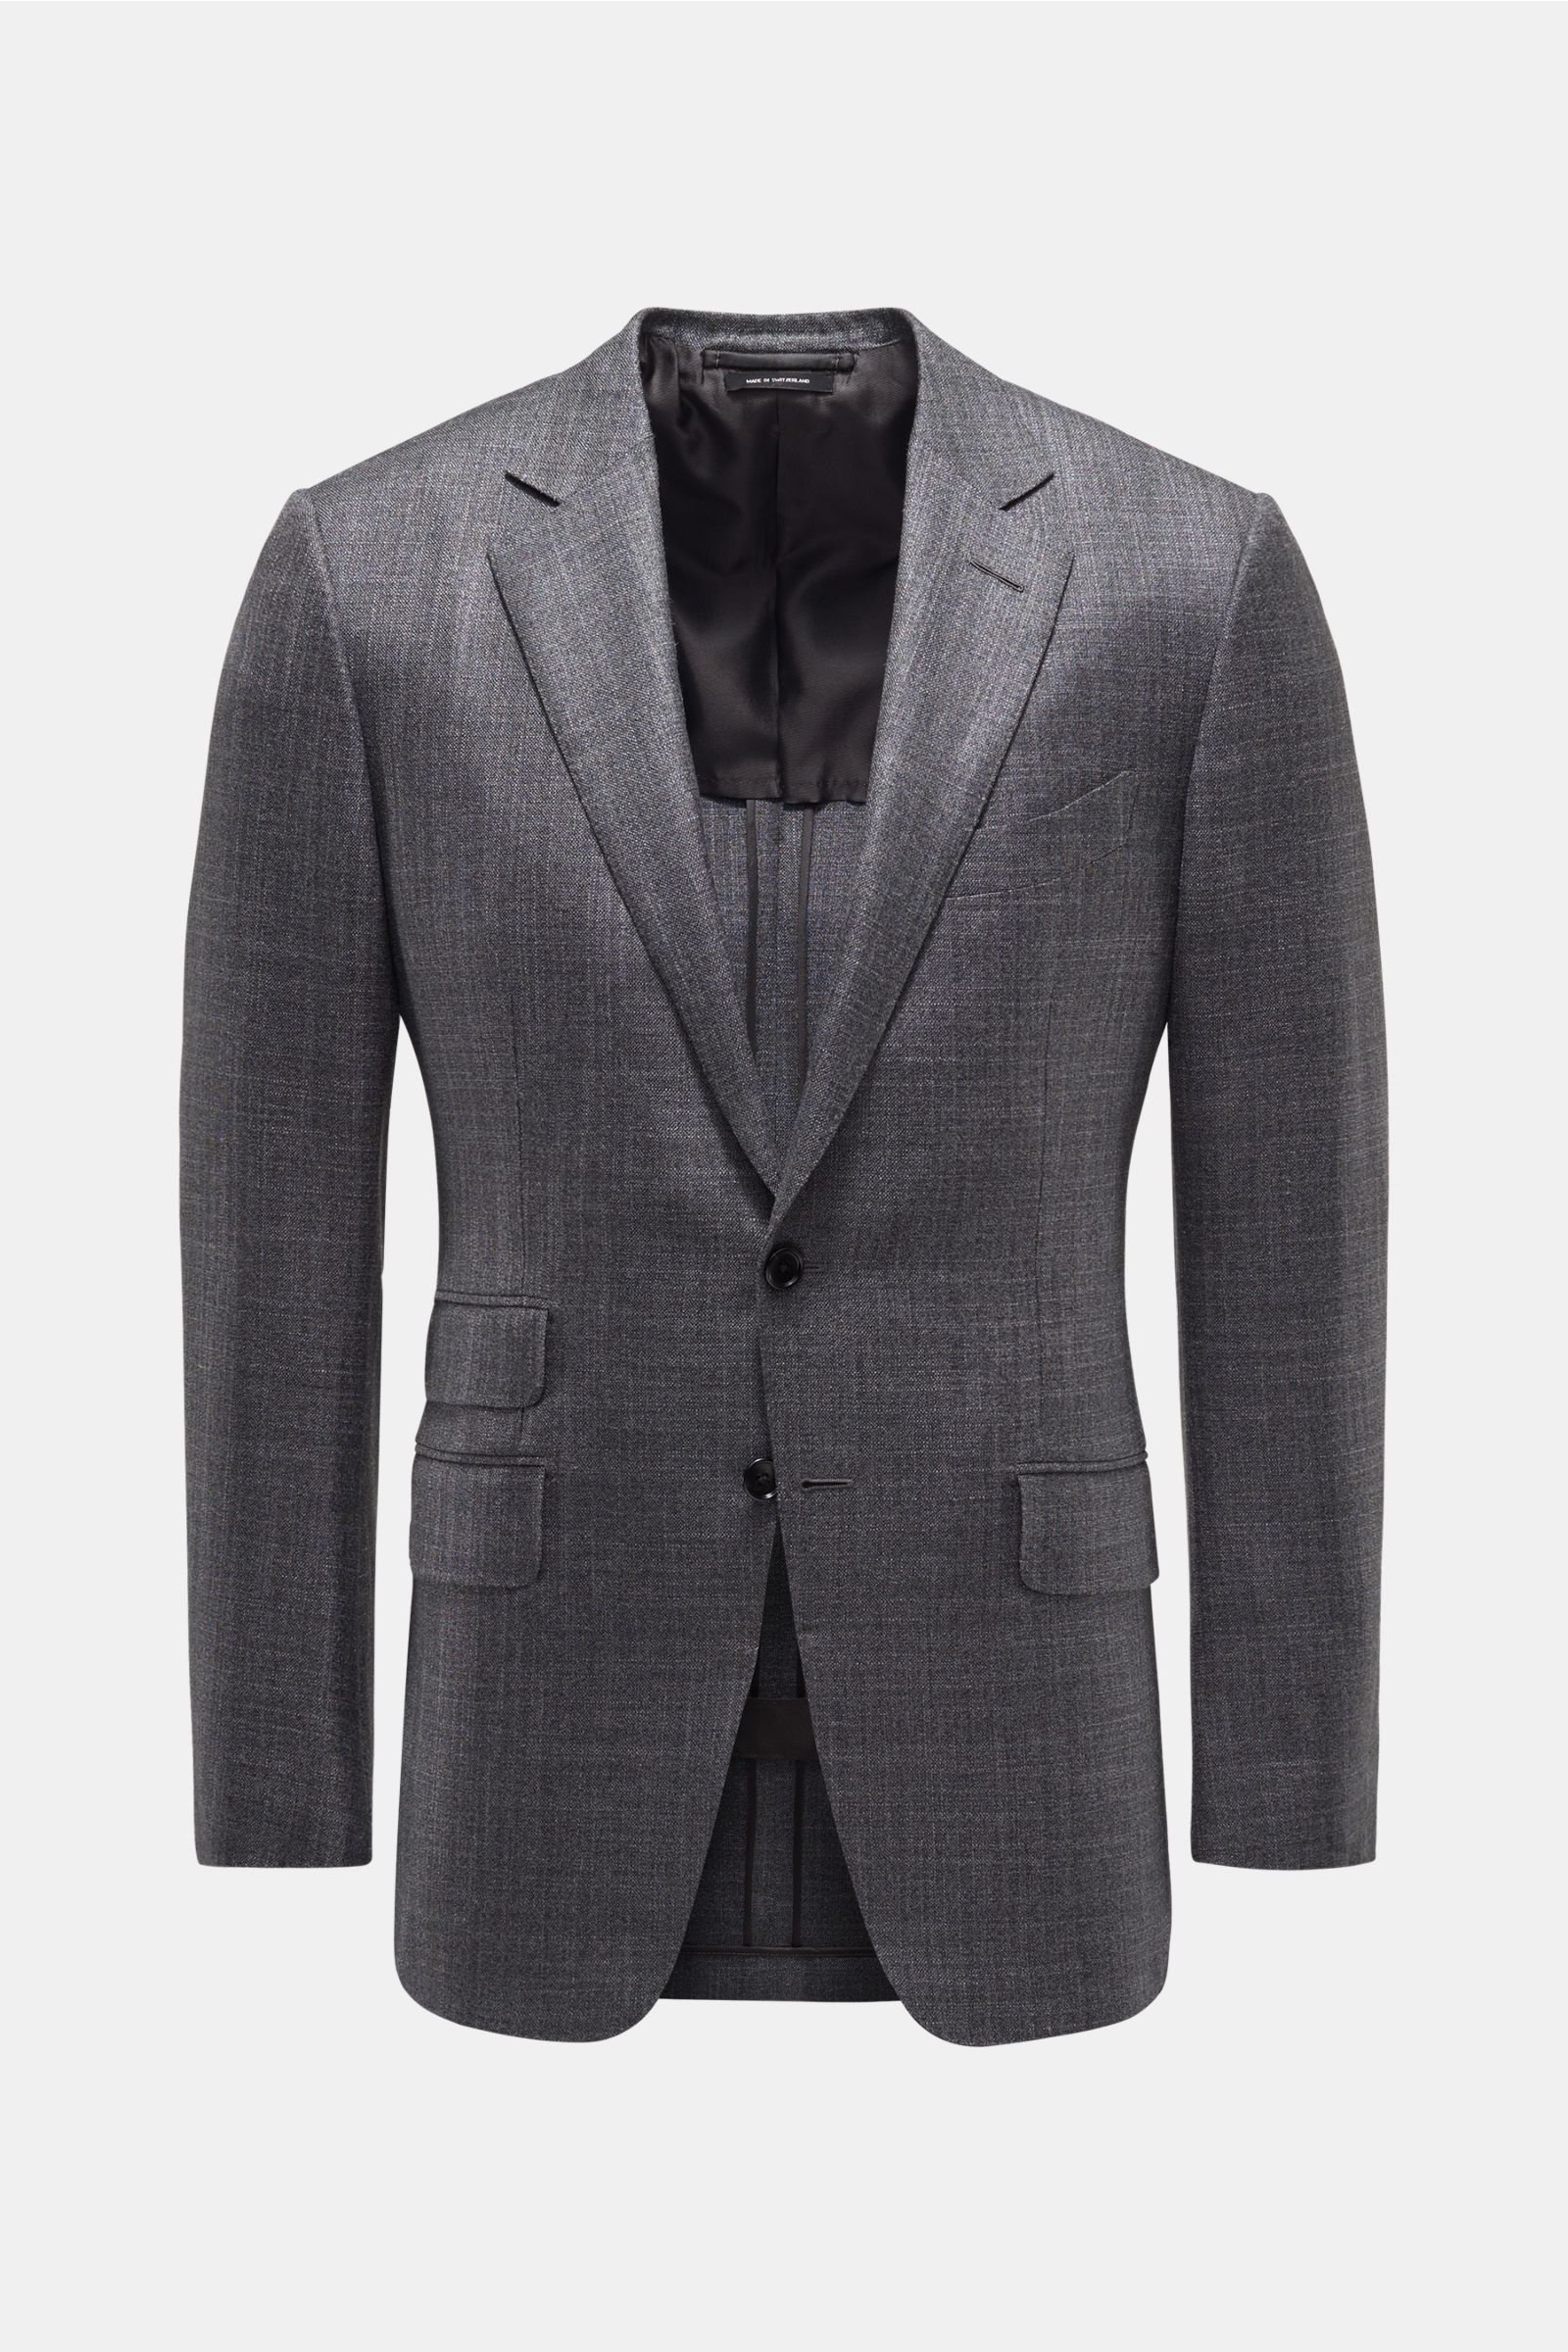 Smart-casual jacket 'O'Connor' dark grey